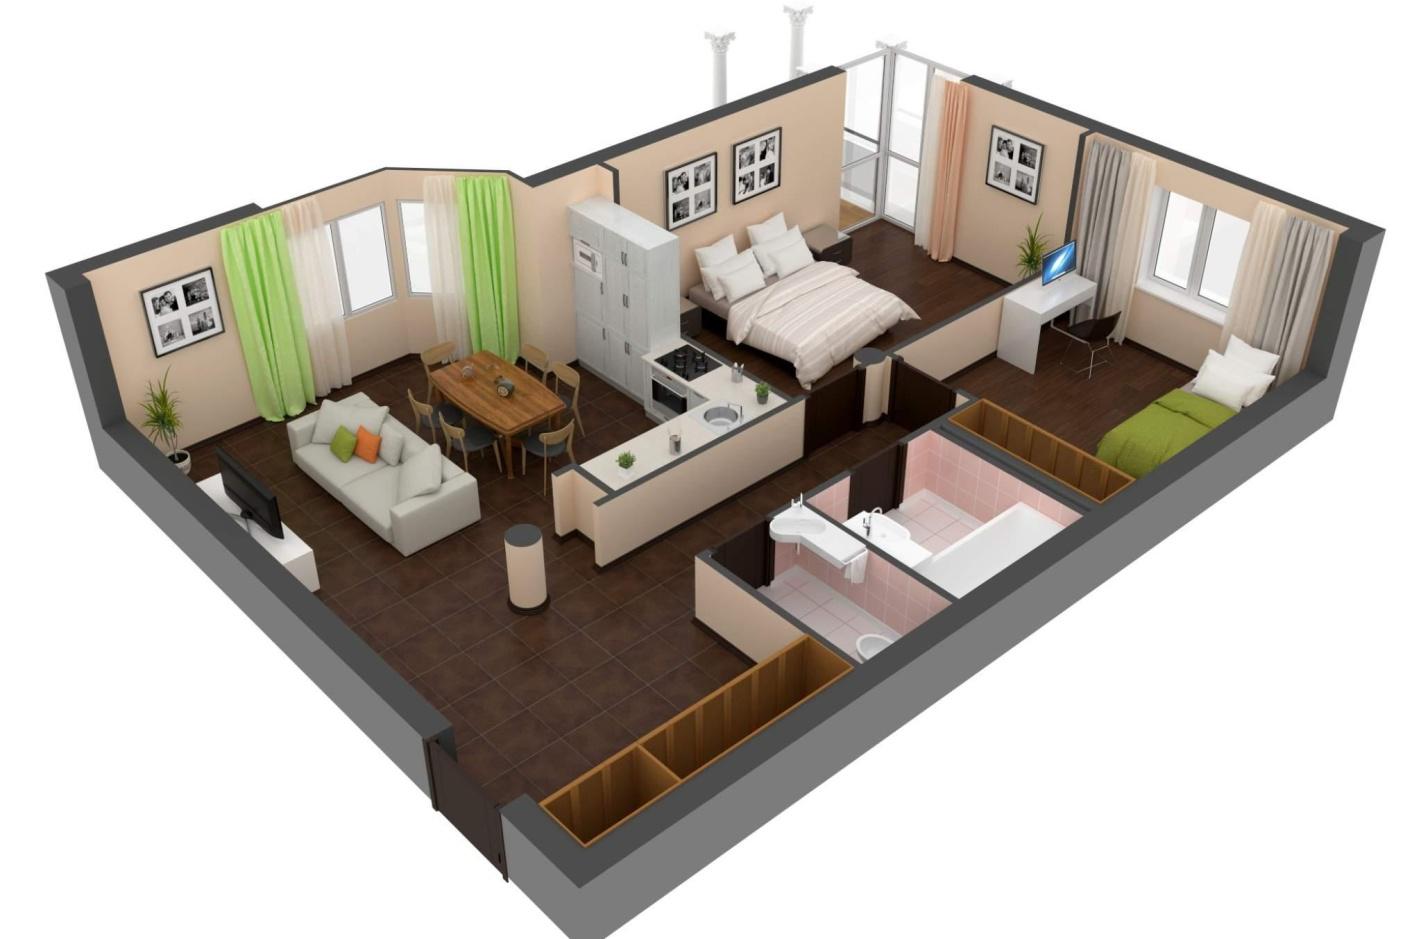 Квадратный метр площади помещения: считаем площадь квартиры, дома или участка максимально быстро